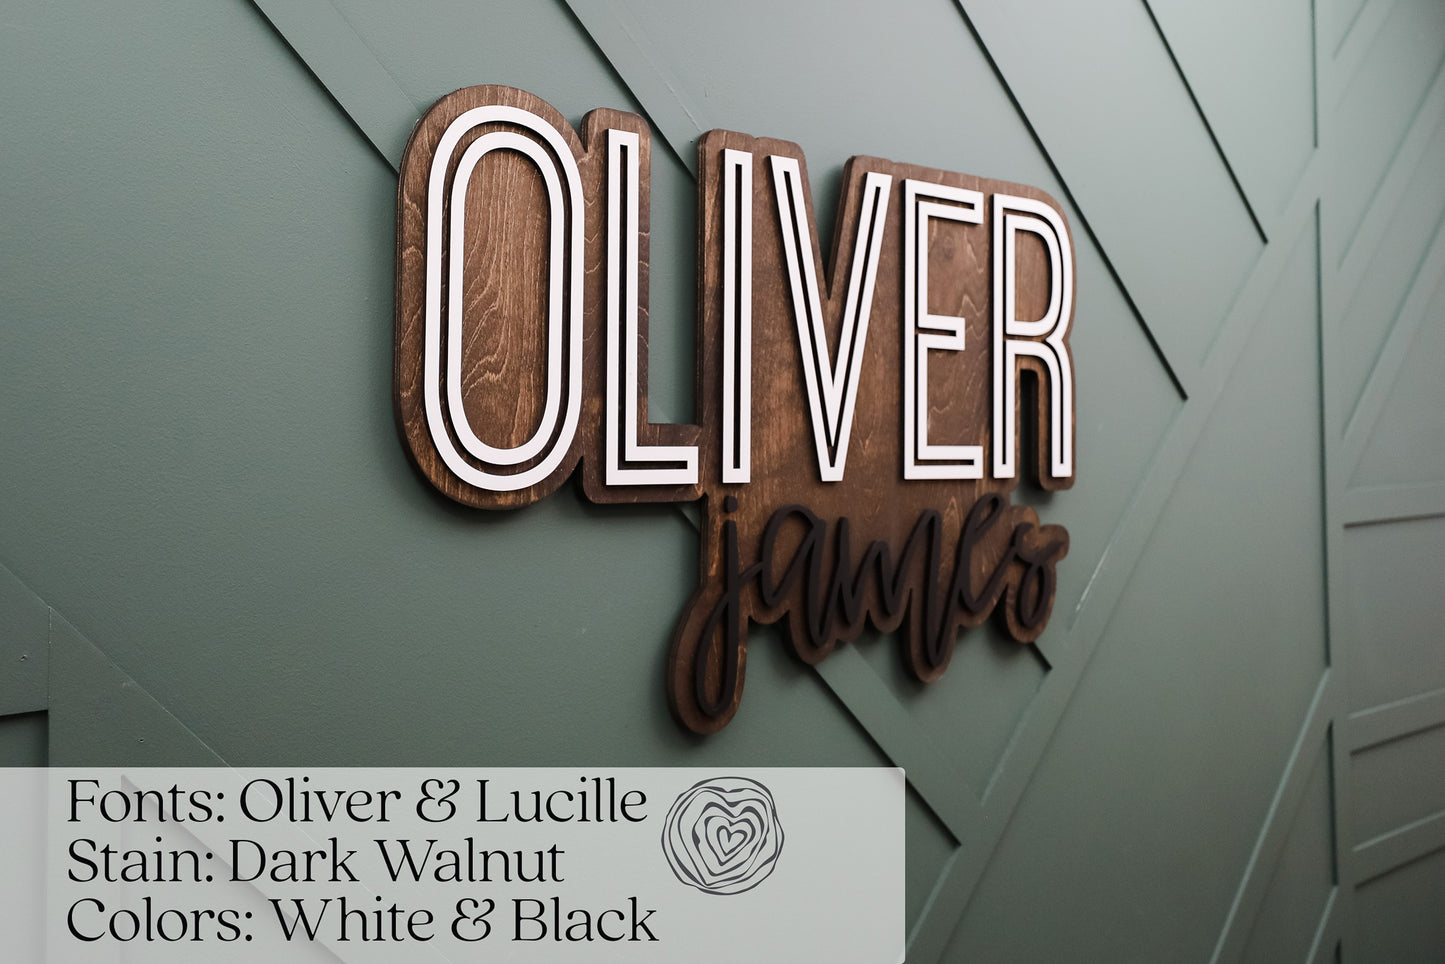 Oliver James Outline Design